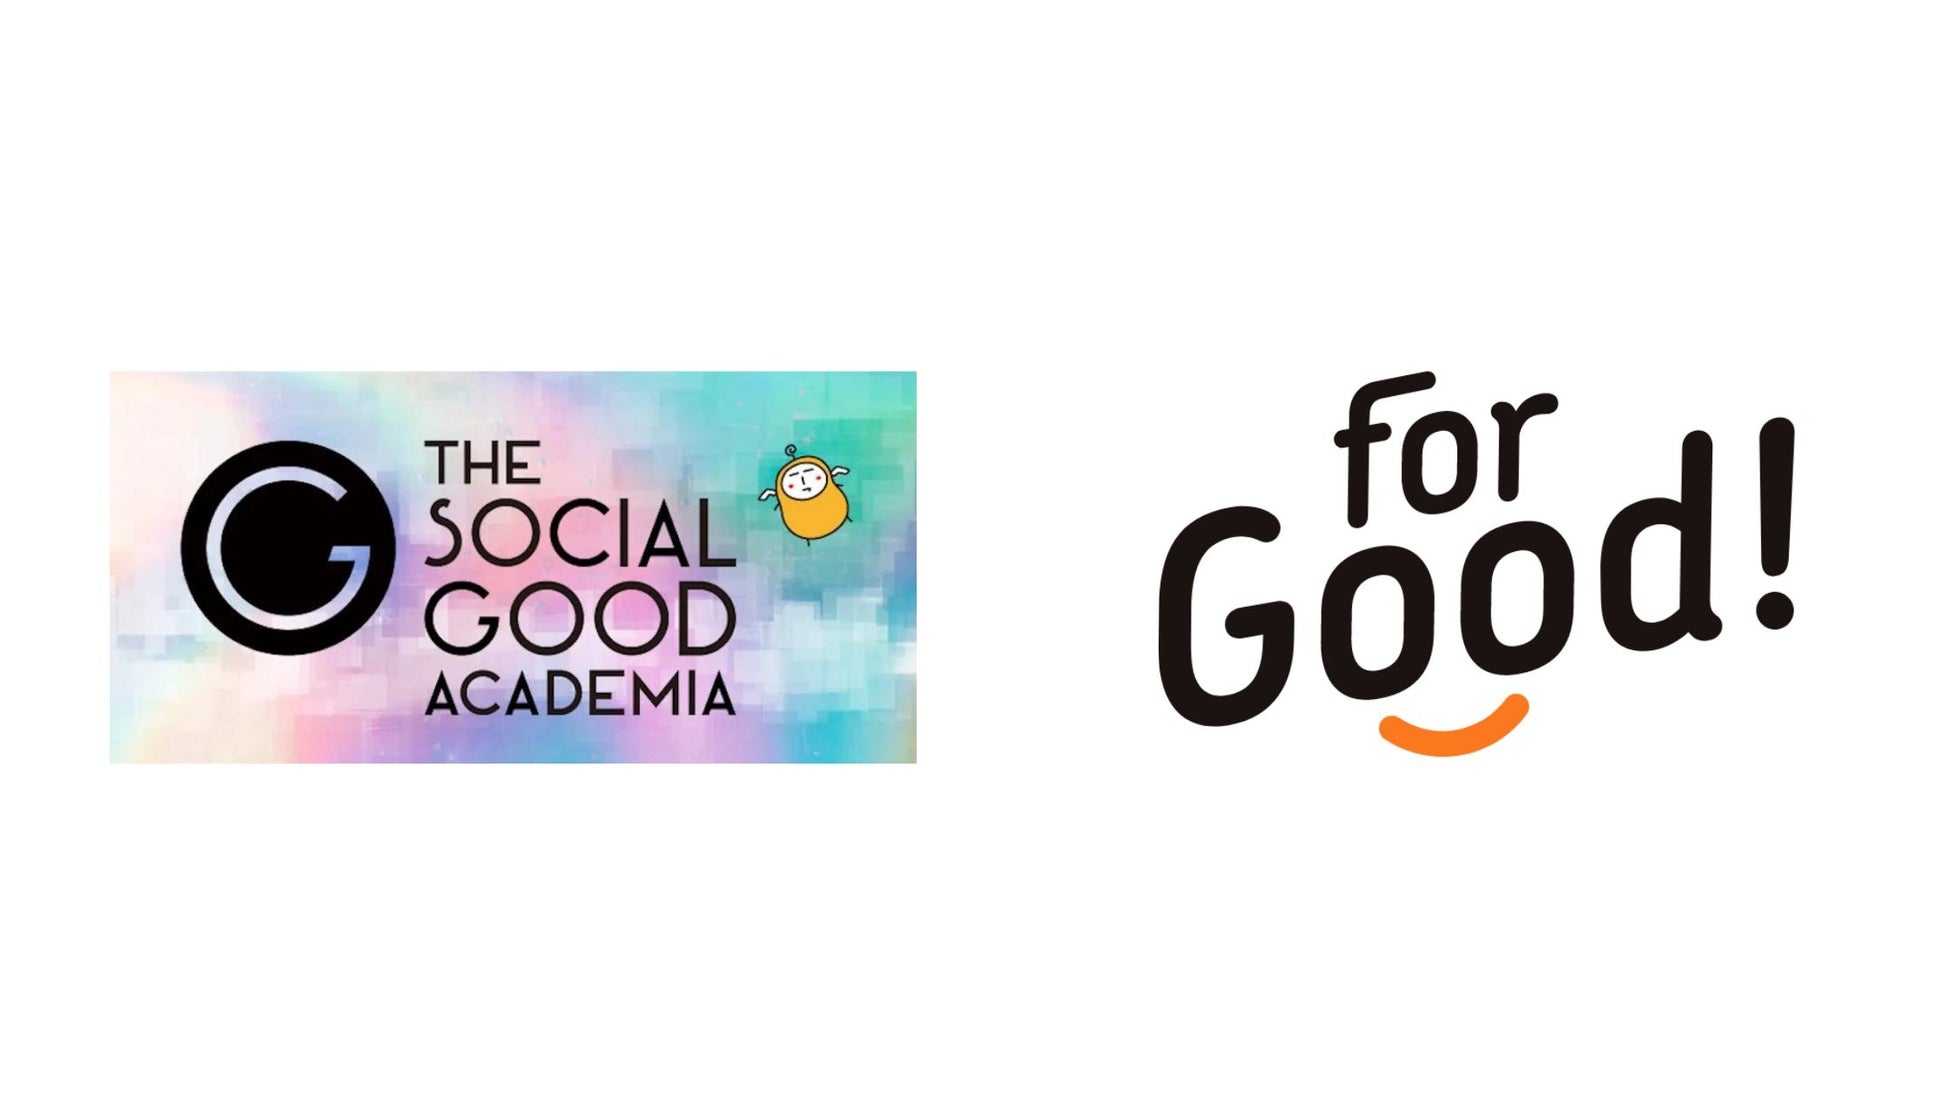 【ソーシャルグッドに挑戦し続ける人を増やす】クラウドファンディング「For Good」が「THE SOCIAL GOOD ACADEMIA」と連携のサブ画像1